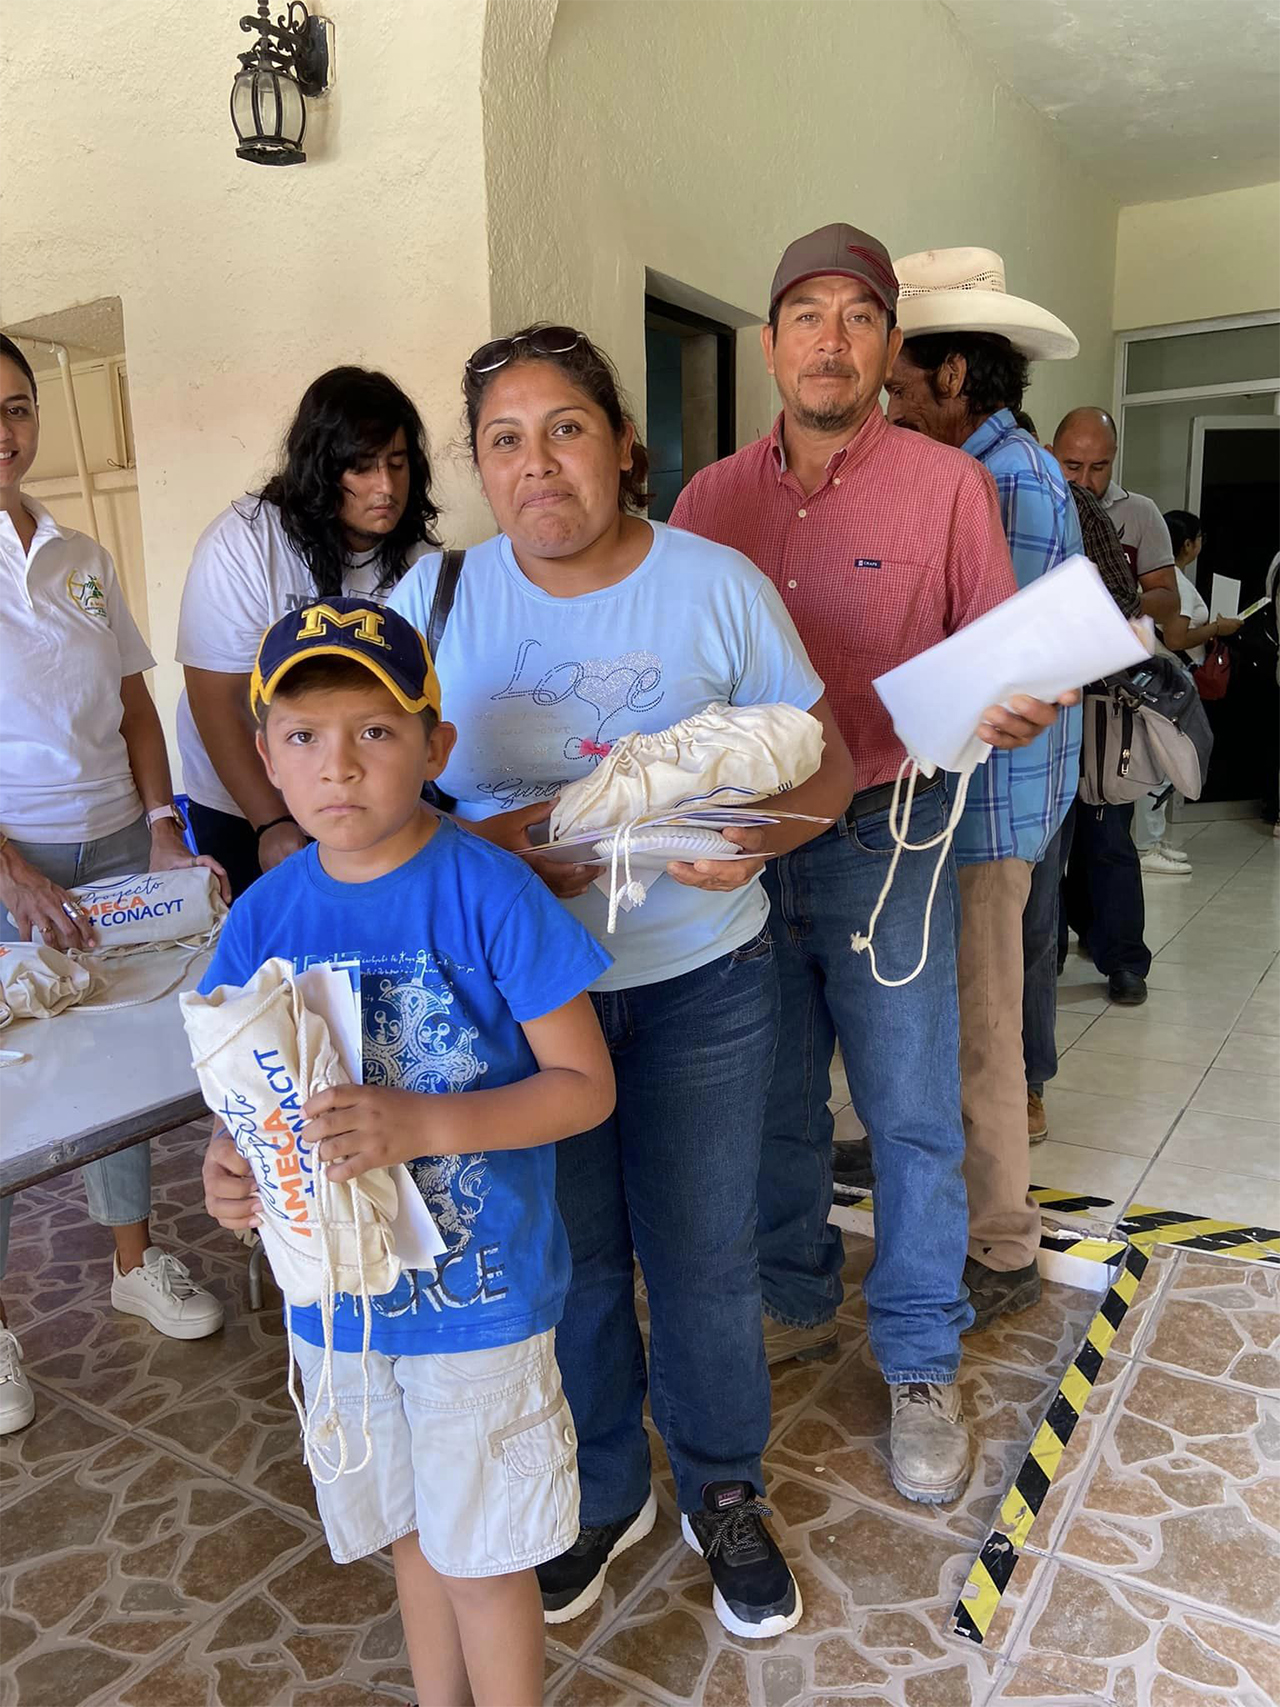 Proyecto AMECA+CONAHCYT. Calidad Alimentaria. Ciclo de Talleres. Mina, Nuevo León - AMECA, AC